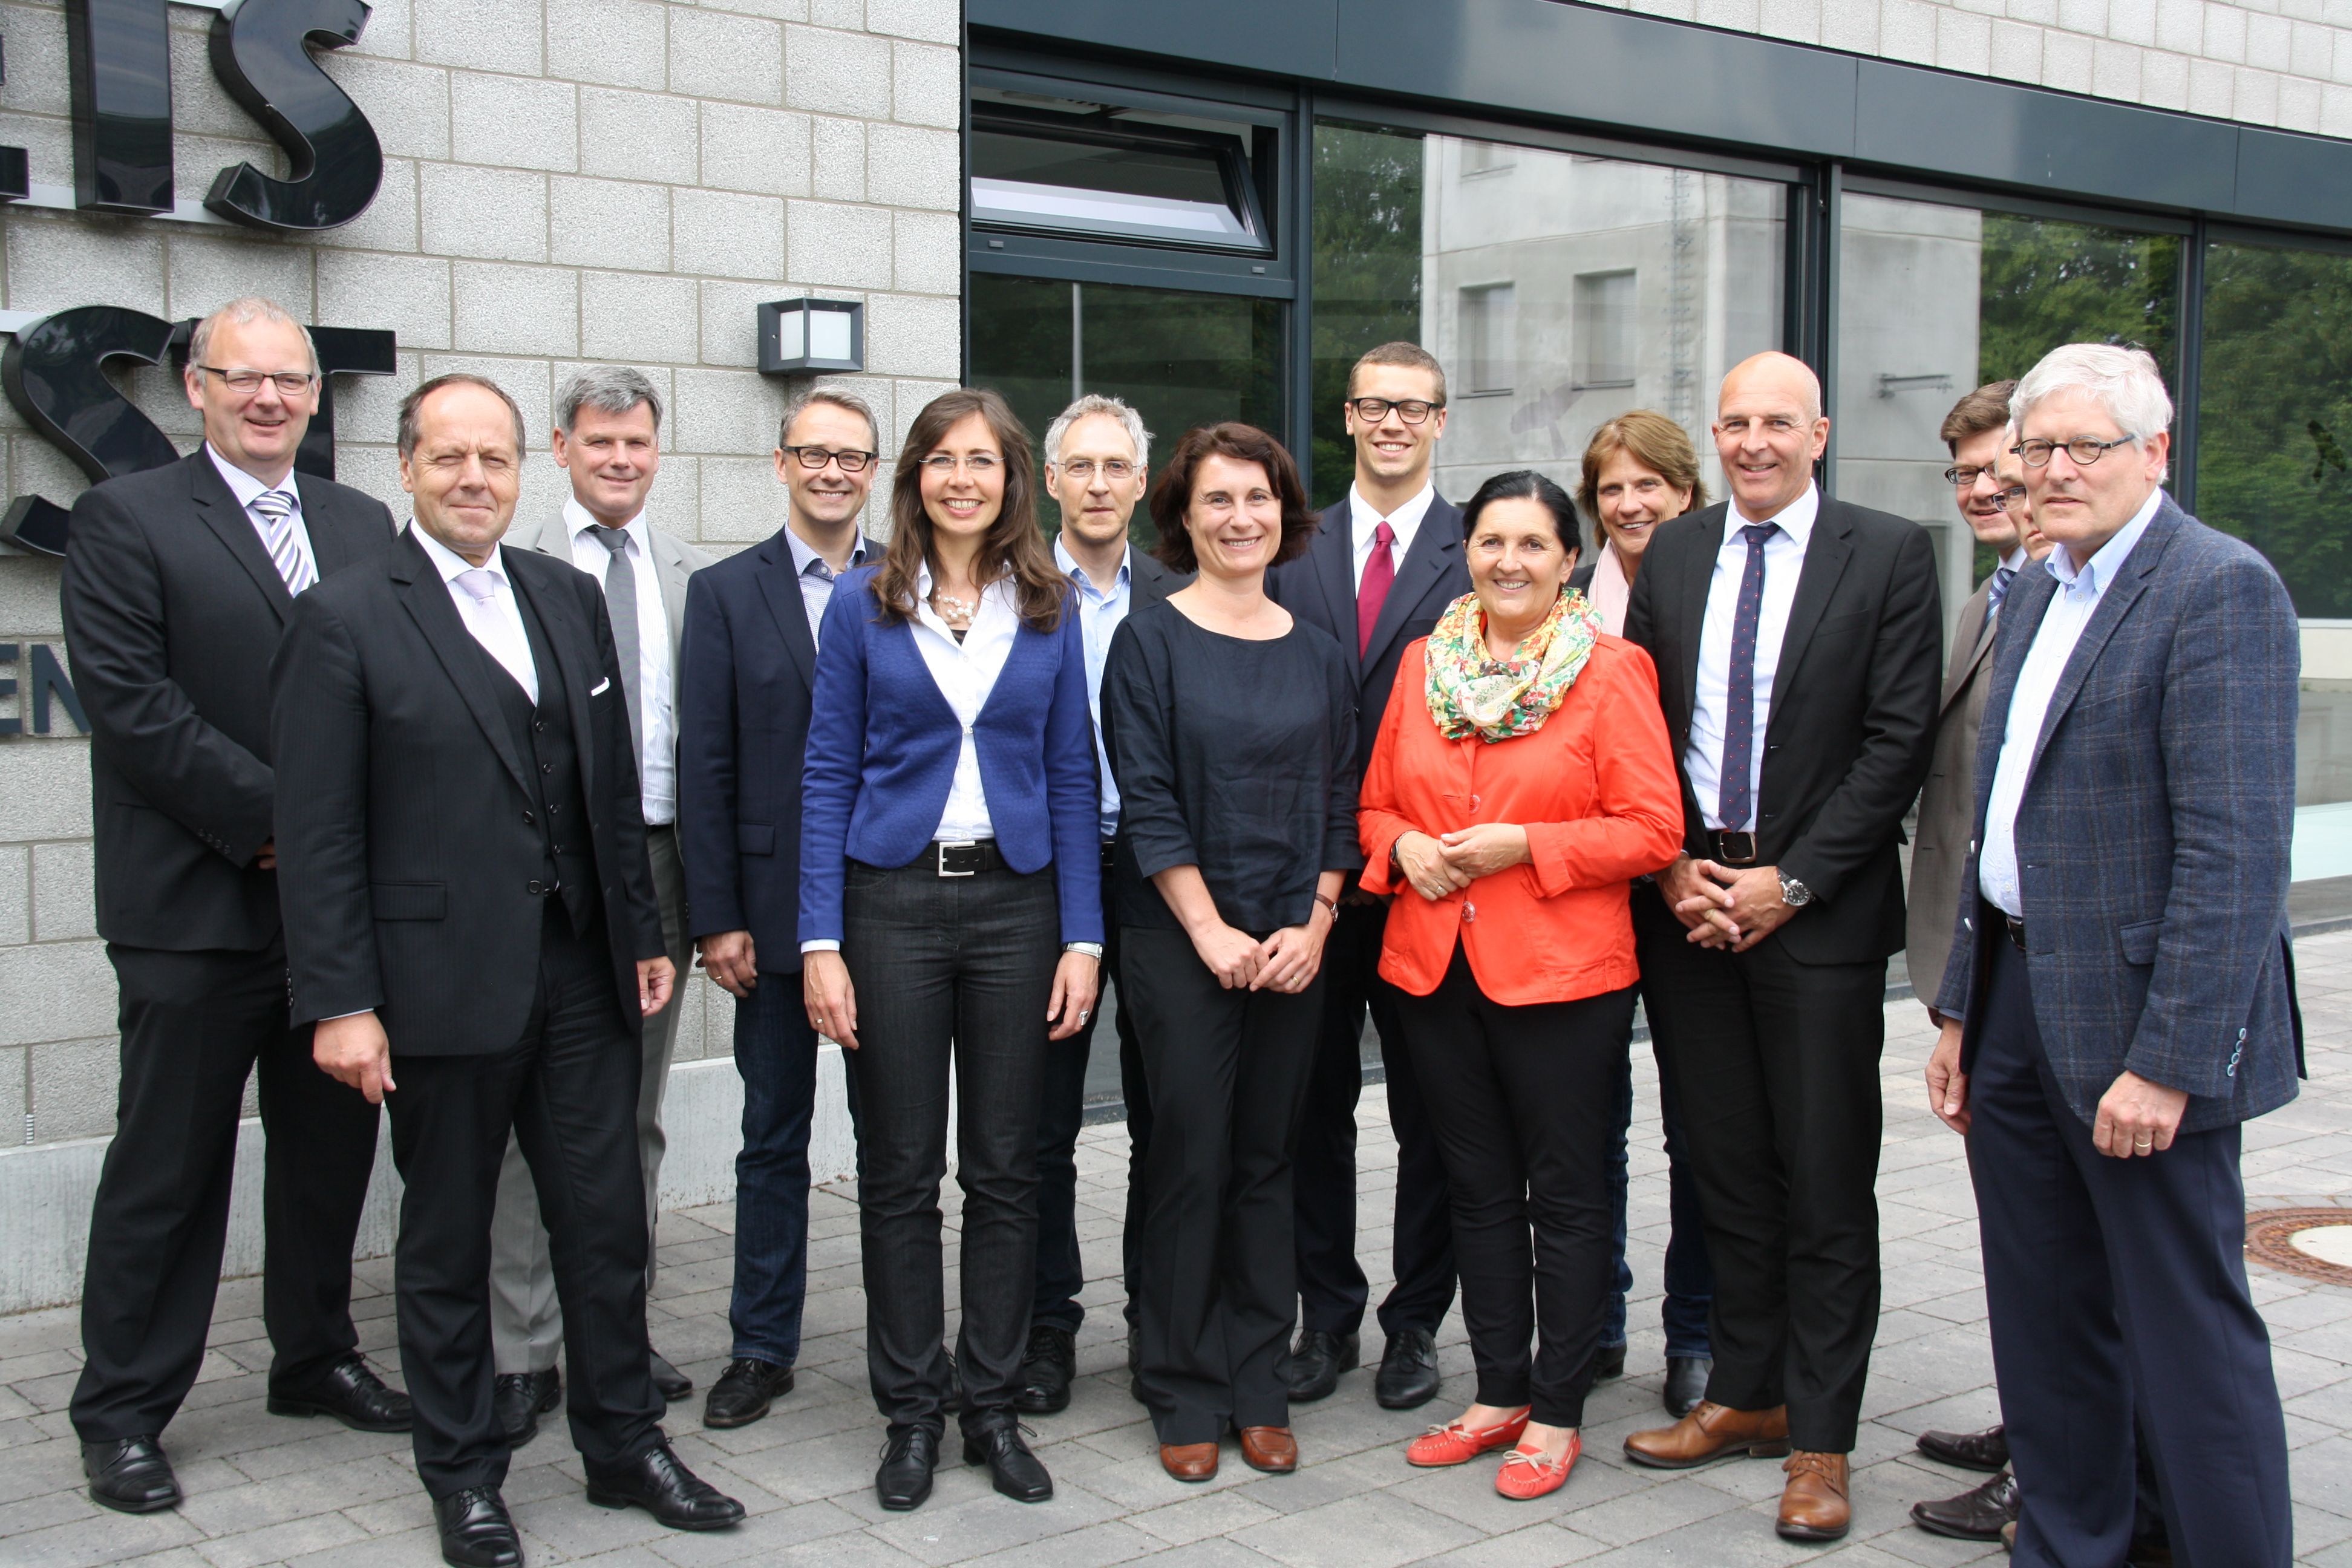 CDU-Fraktionsvorsitzende Irrgang empfängt die CDU-Betriebsgruppe des LWL, gemeinsame Besichtigung des neuen Rettungszentrums